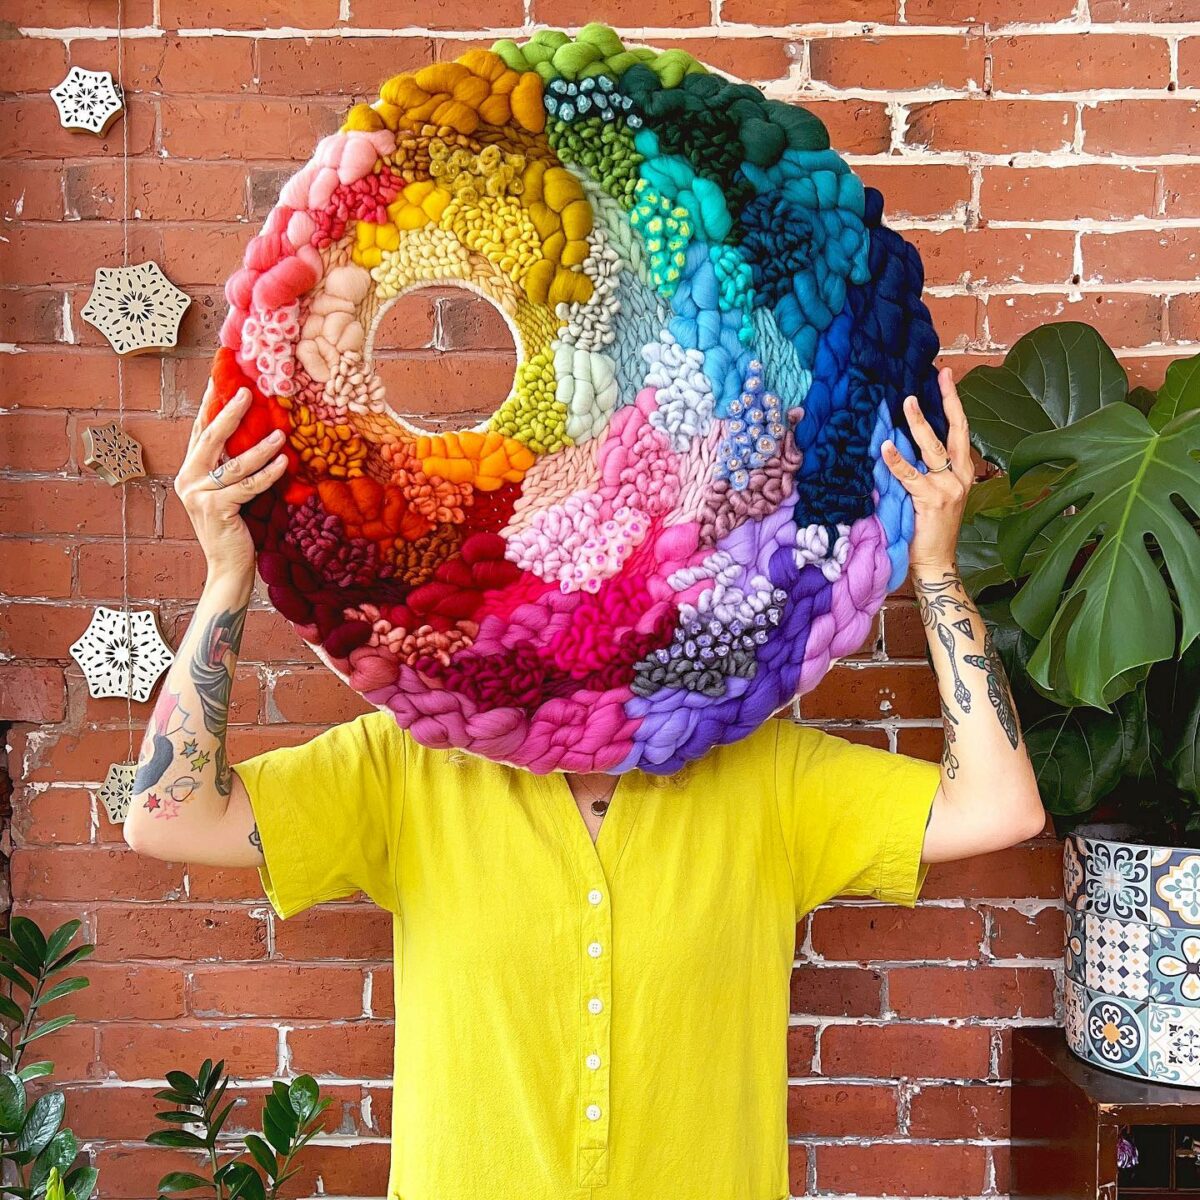 The Exuberant Textile Art In Vivid Colors Of Jen Duffin (1)